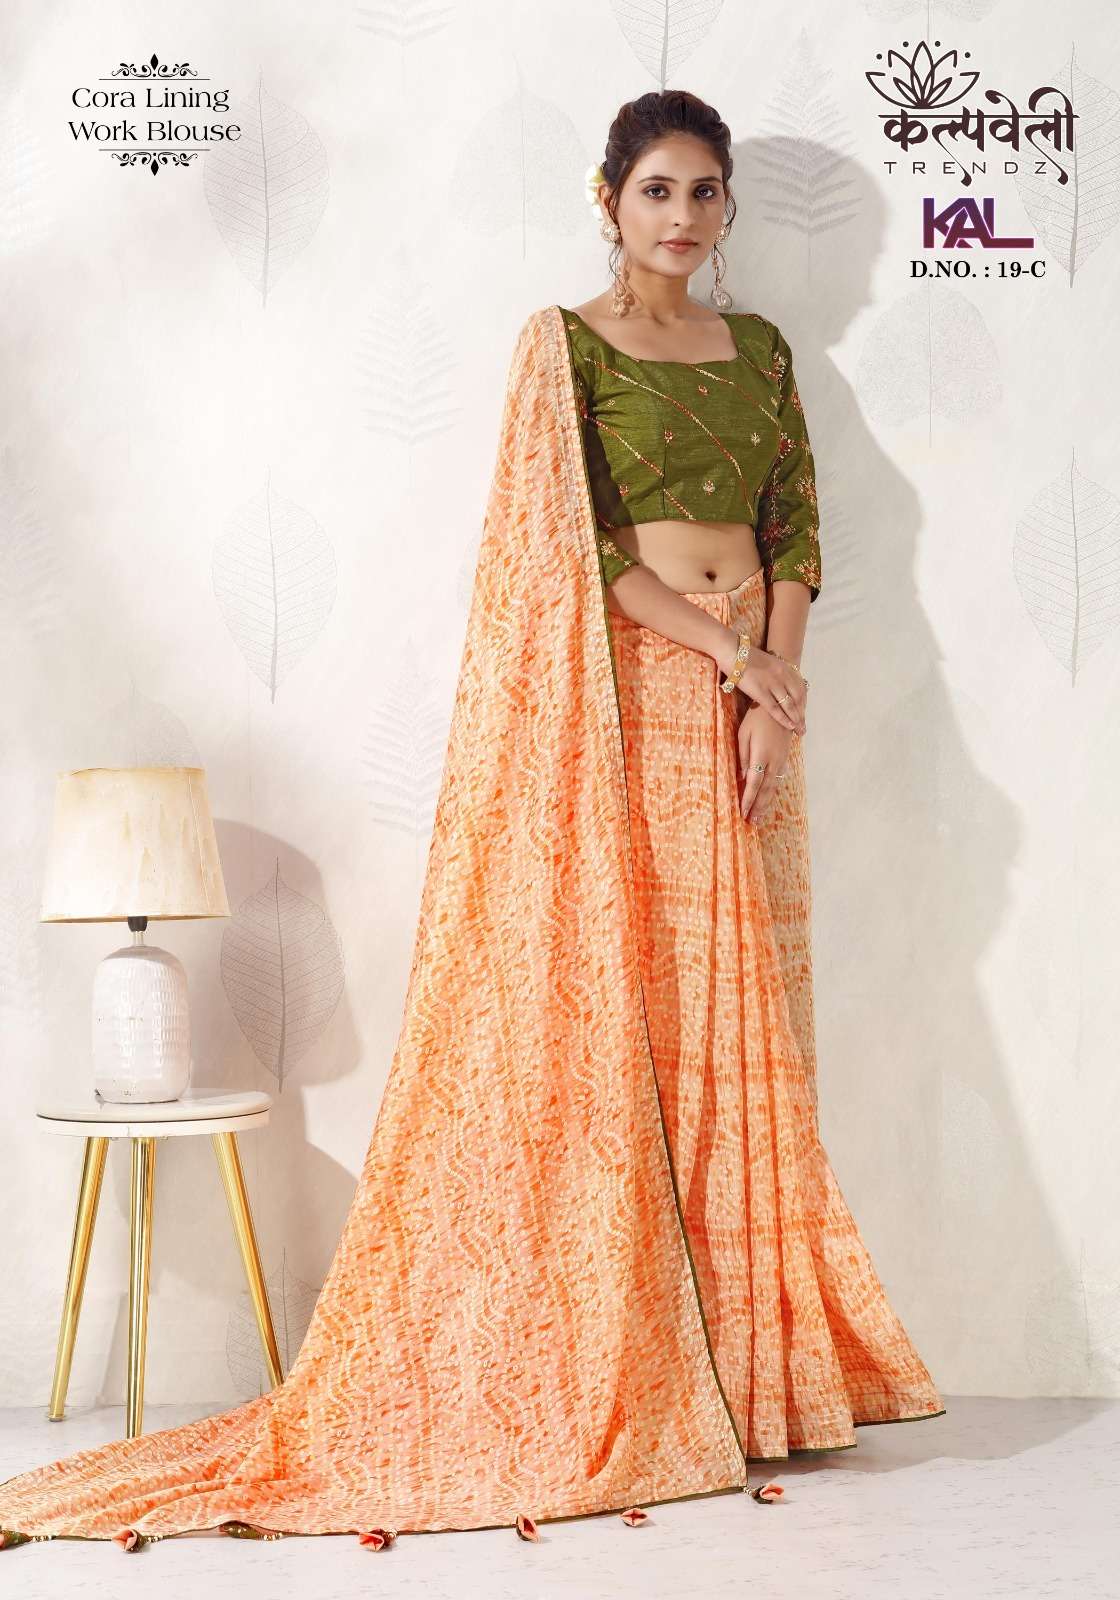 kalpavelly trendz kal 19 fancy bandhani print amazing sarees